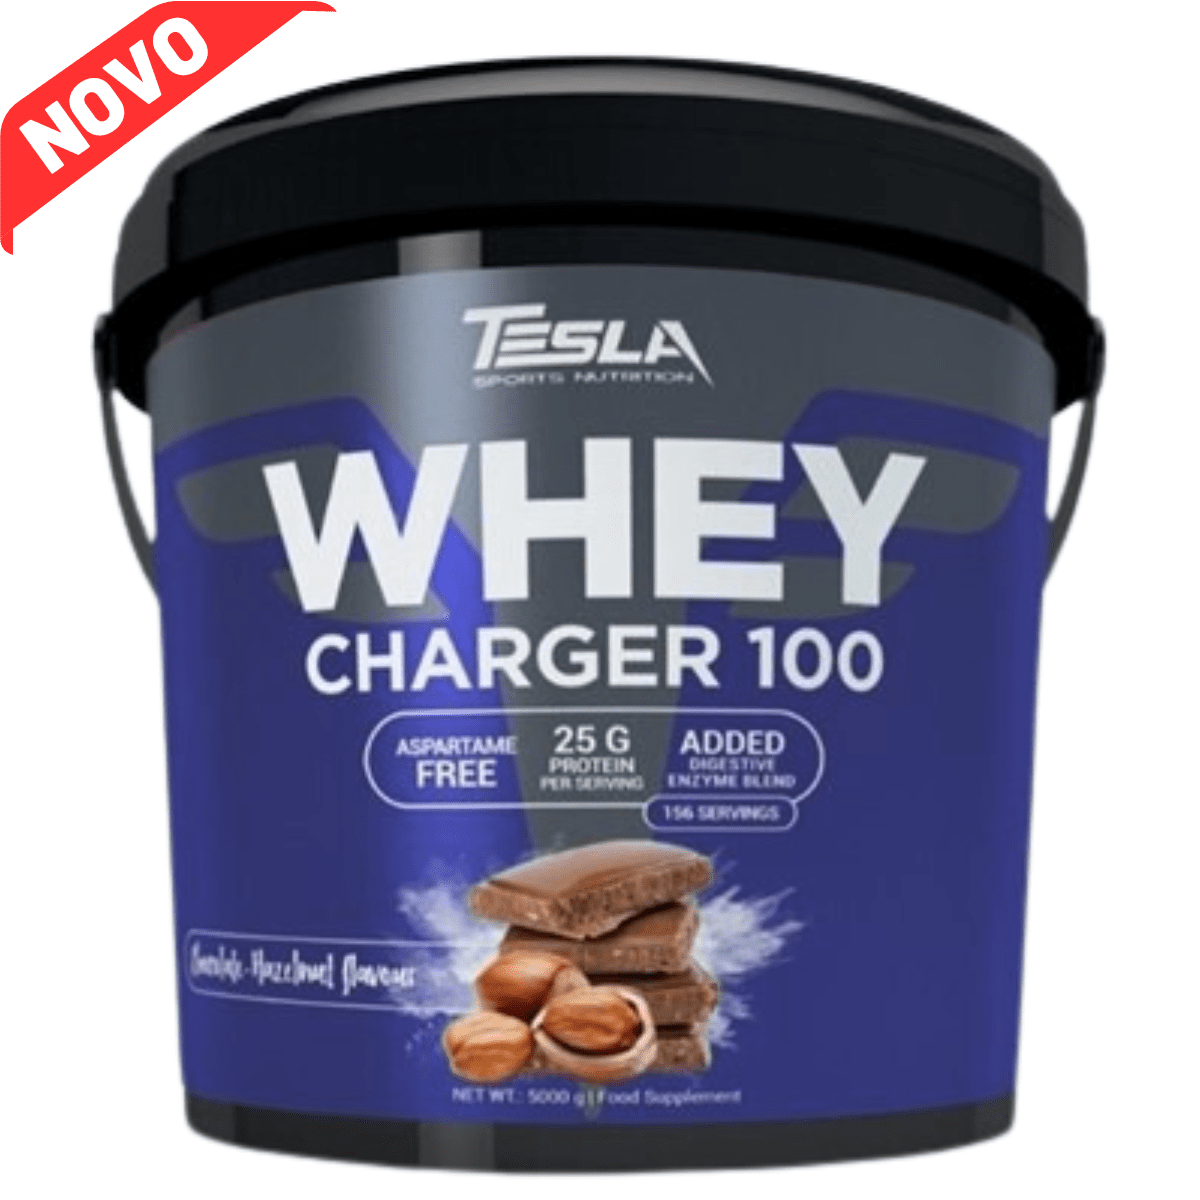 Tesla Whey Charger 100 | Muscle Freak